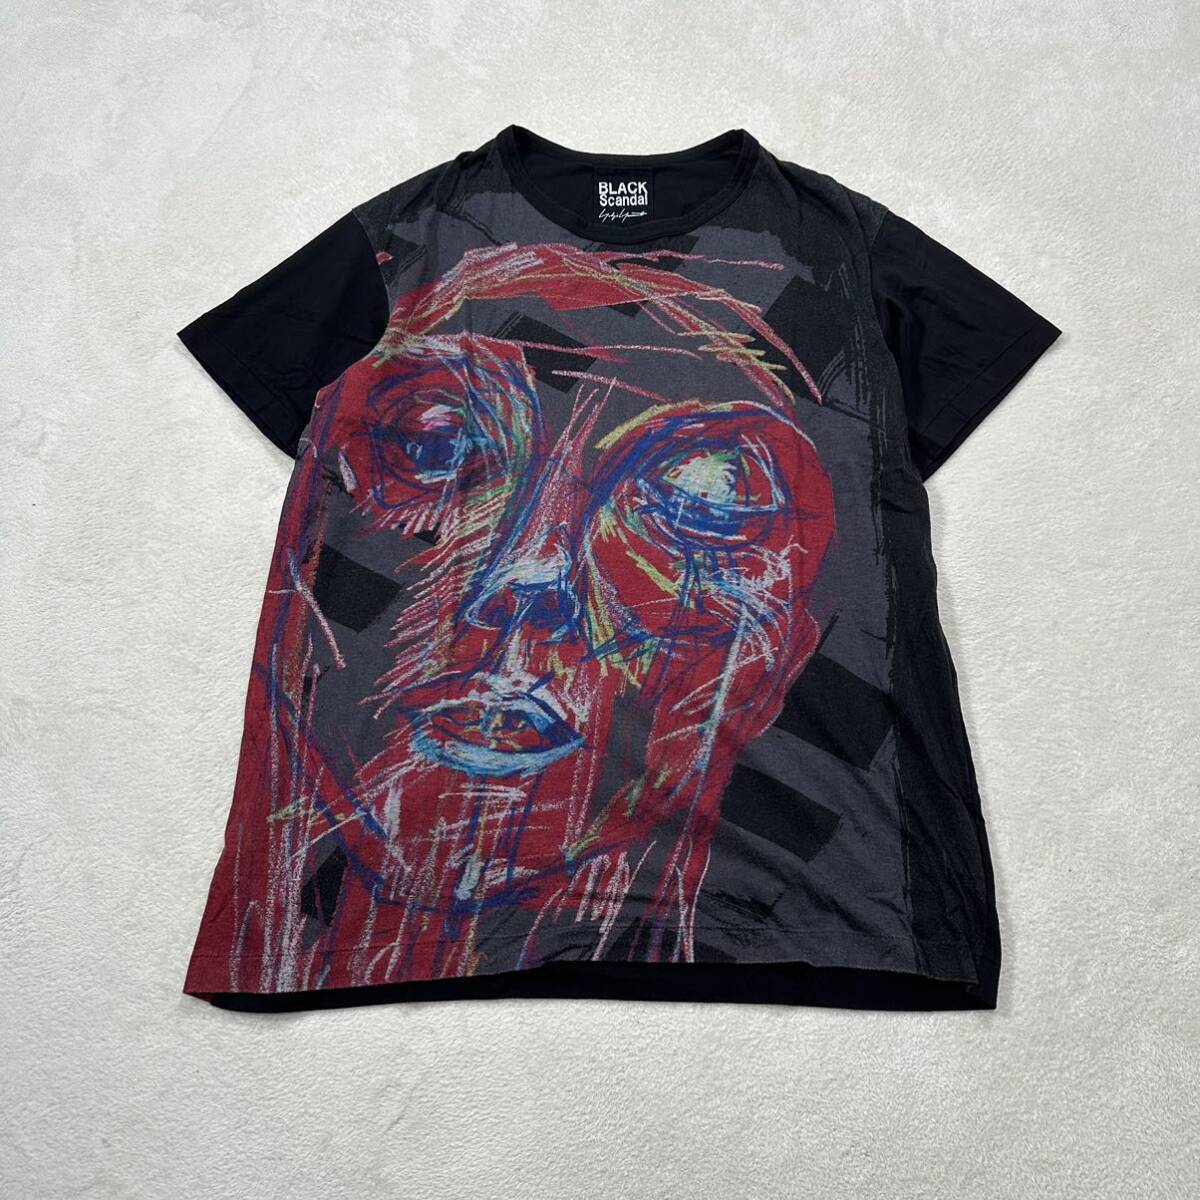 Yohji Yamamoto BLACK SCANDAL カットソー 3 ヨウジヤマモト 朝倉PT 赤顔半袖 プリント カットソー Tシャツ リヨセル70% コットン30%_画像2